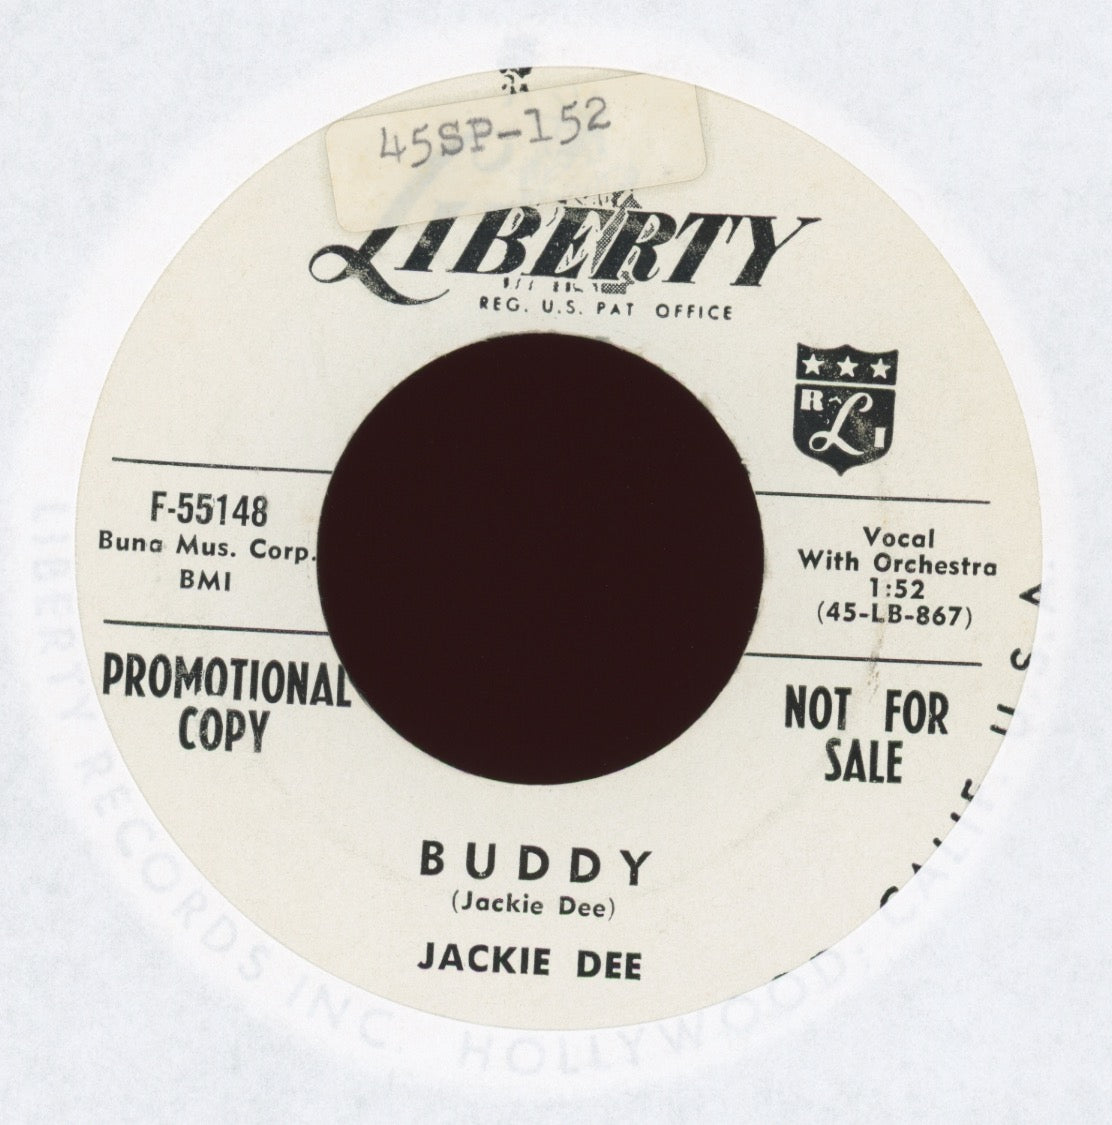 Jackie Dee - Buddy on Liberty Promo